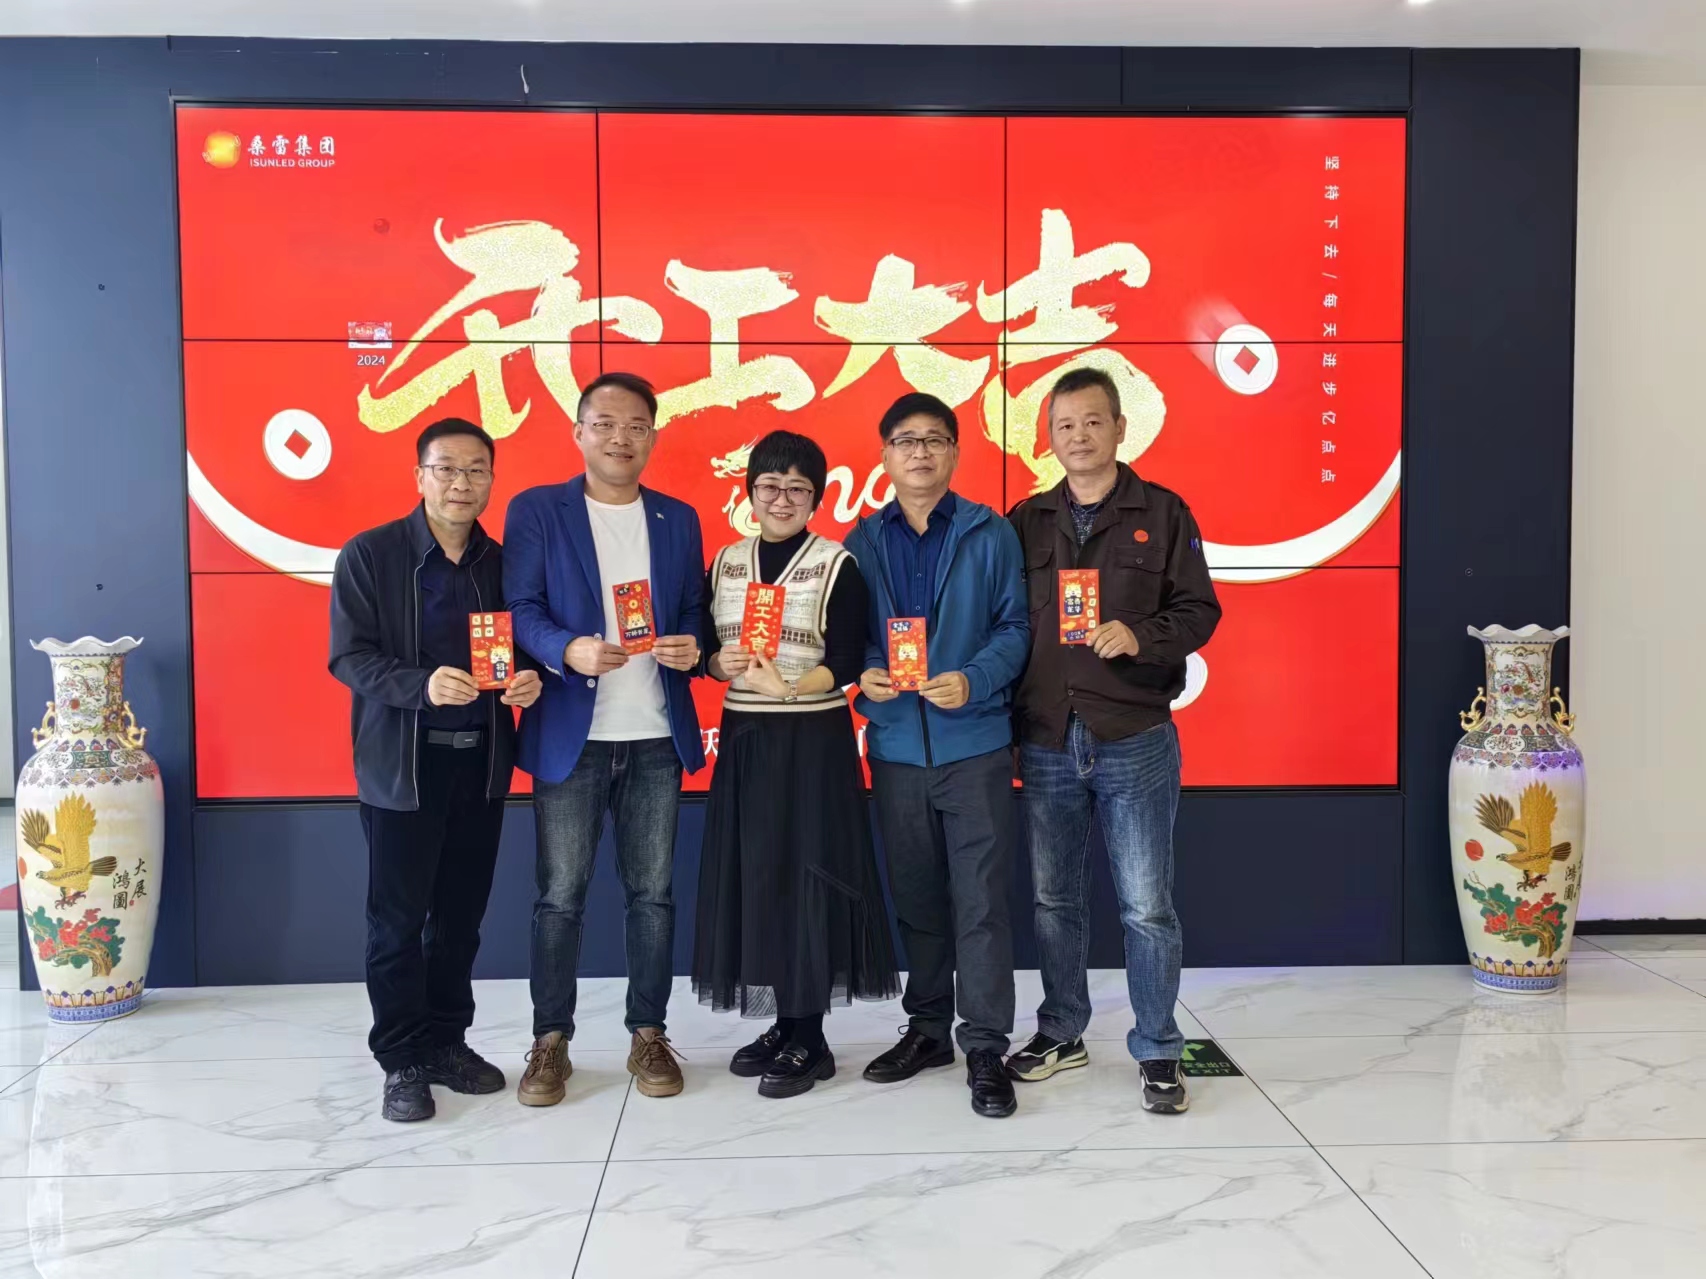 La celebració de l'Any Nou Lunar comença a Xiamen Sunled Electric Appliances Co., Ltd mentre els empleats tornen a la feina